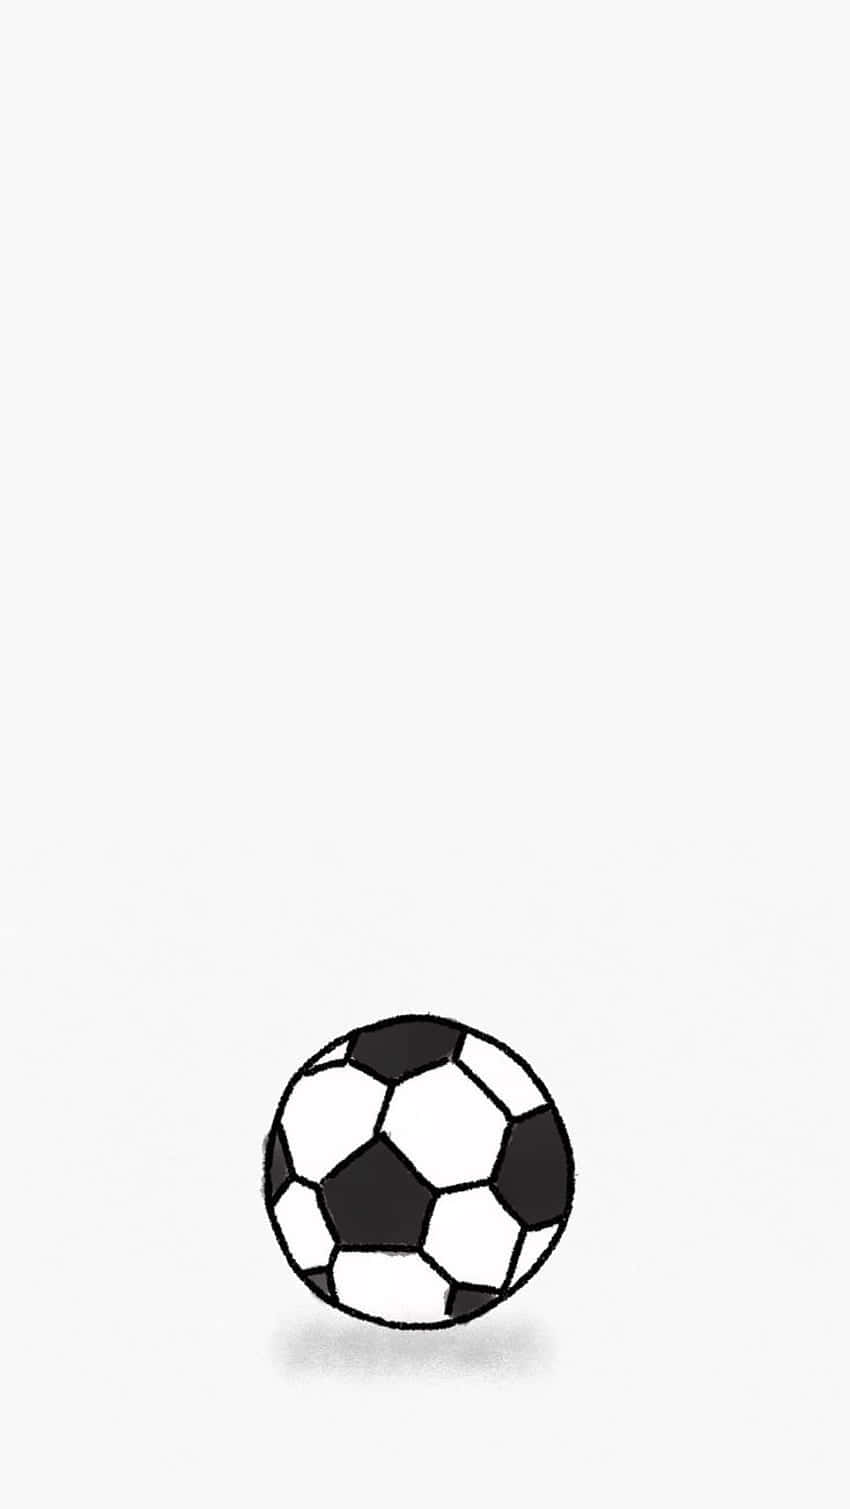 Soccer Ball Background Black White